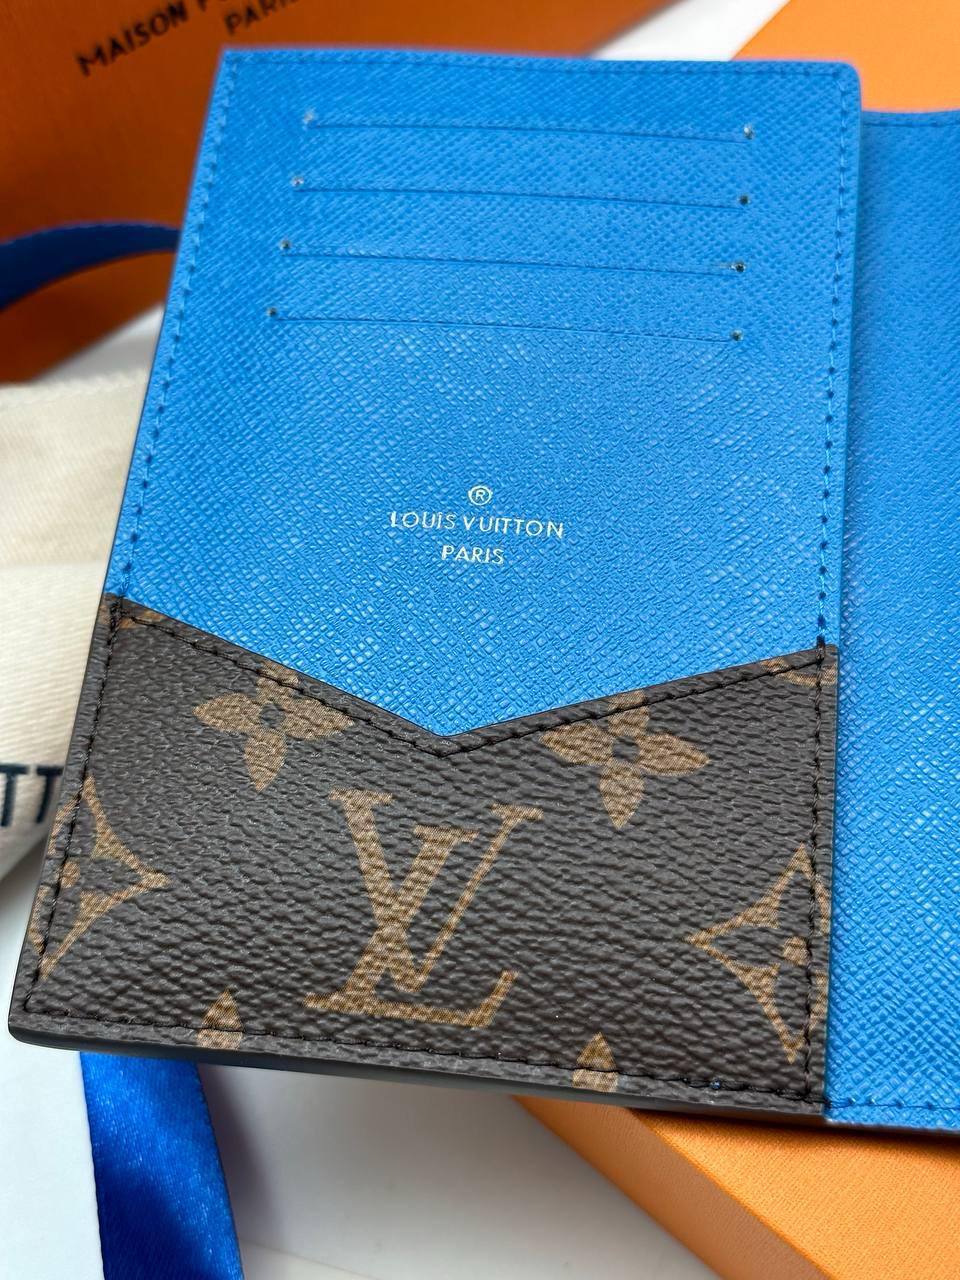  Обложка на паспорт Louis Vuitton Артикул PL-45435. Вид 4